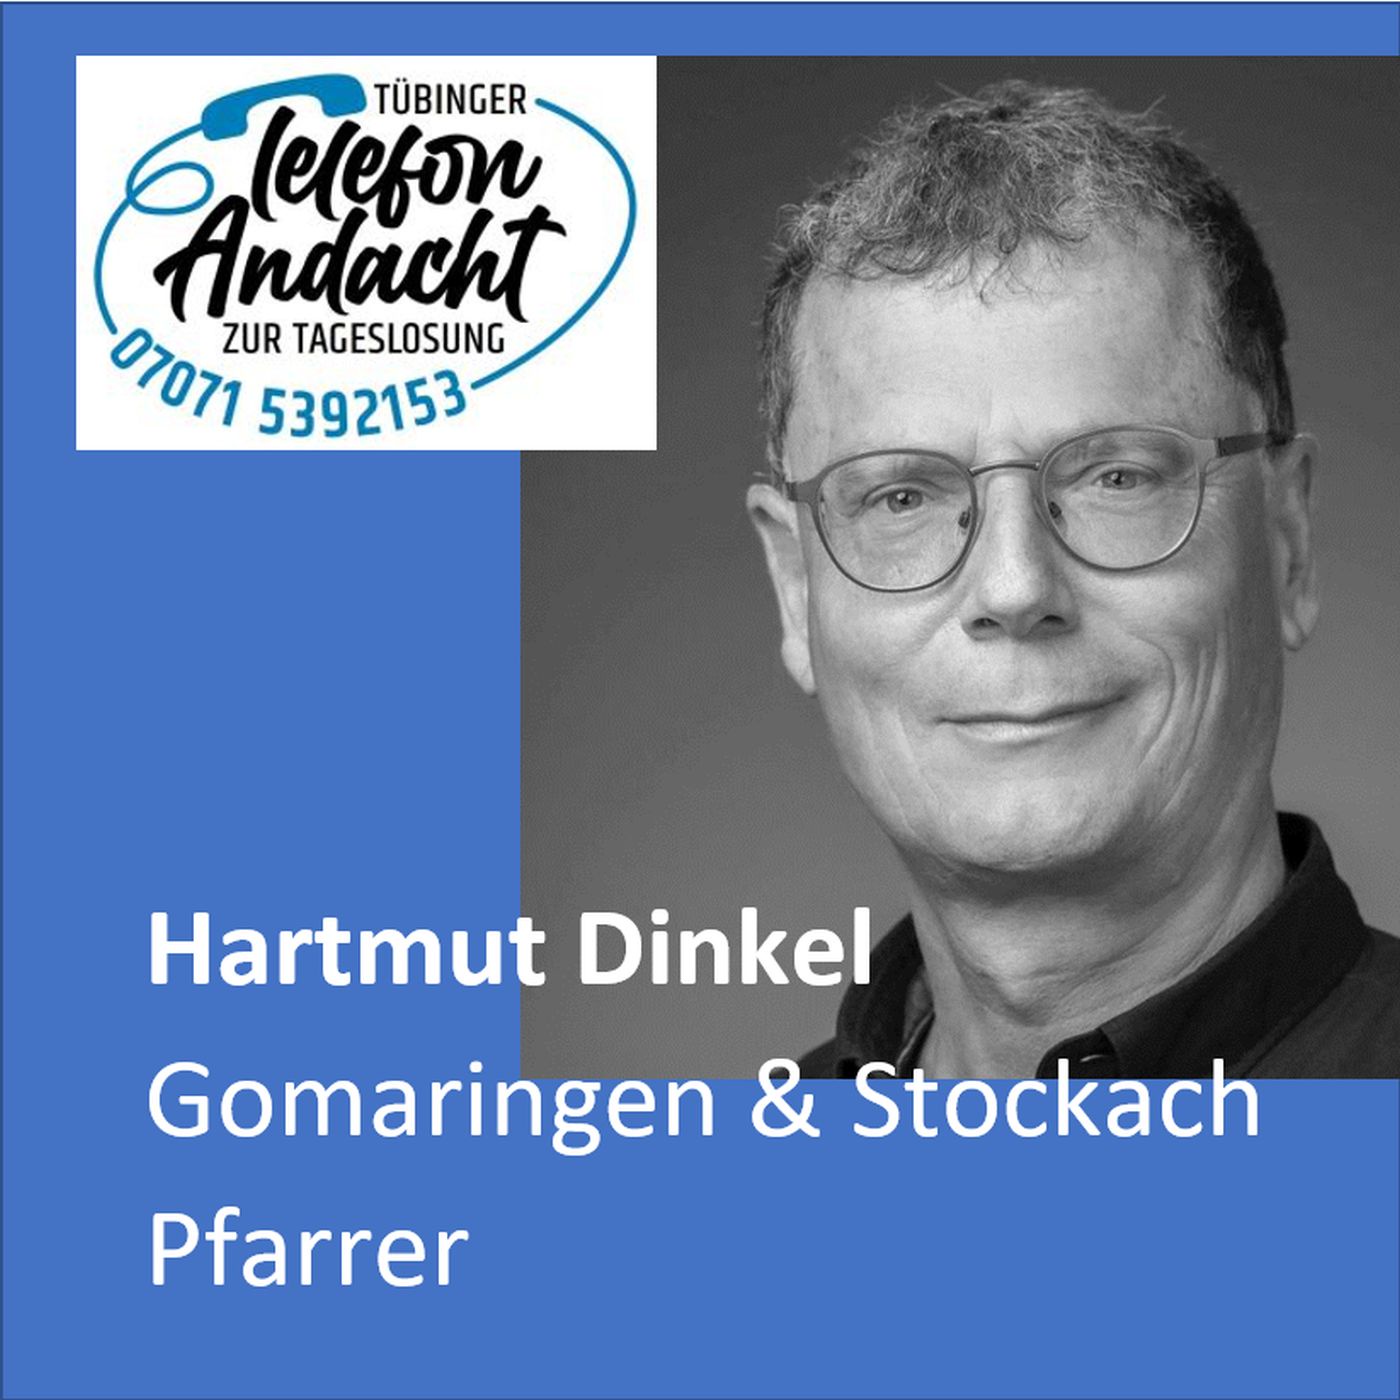 24 05 17 Hartmut Dinkel